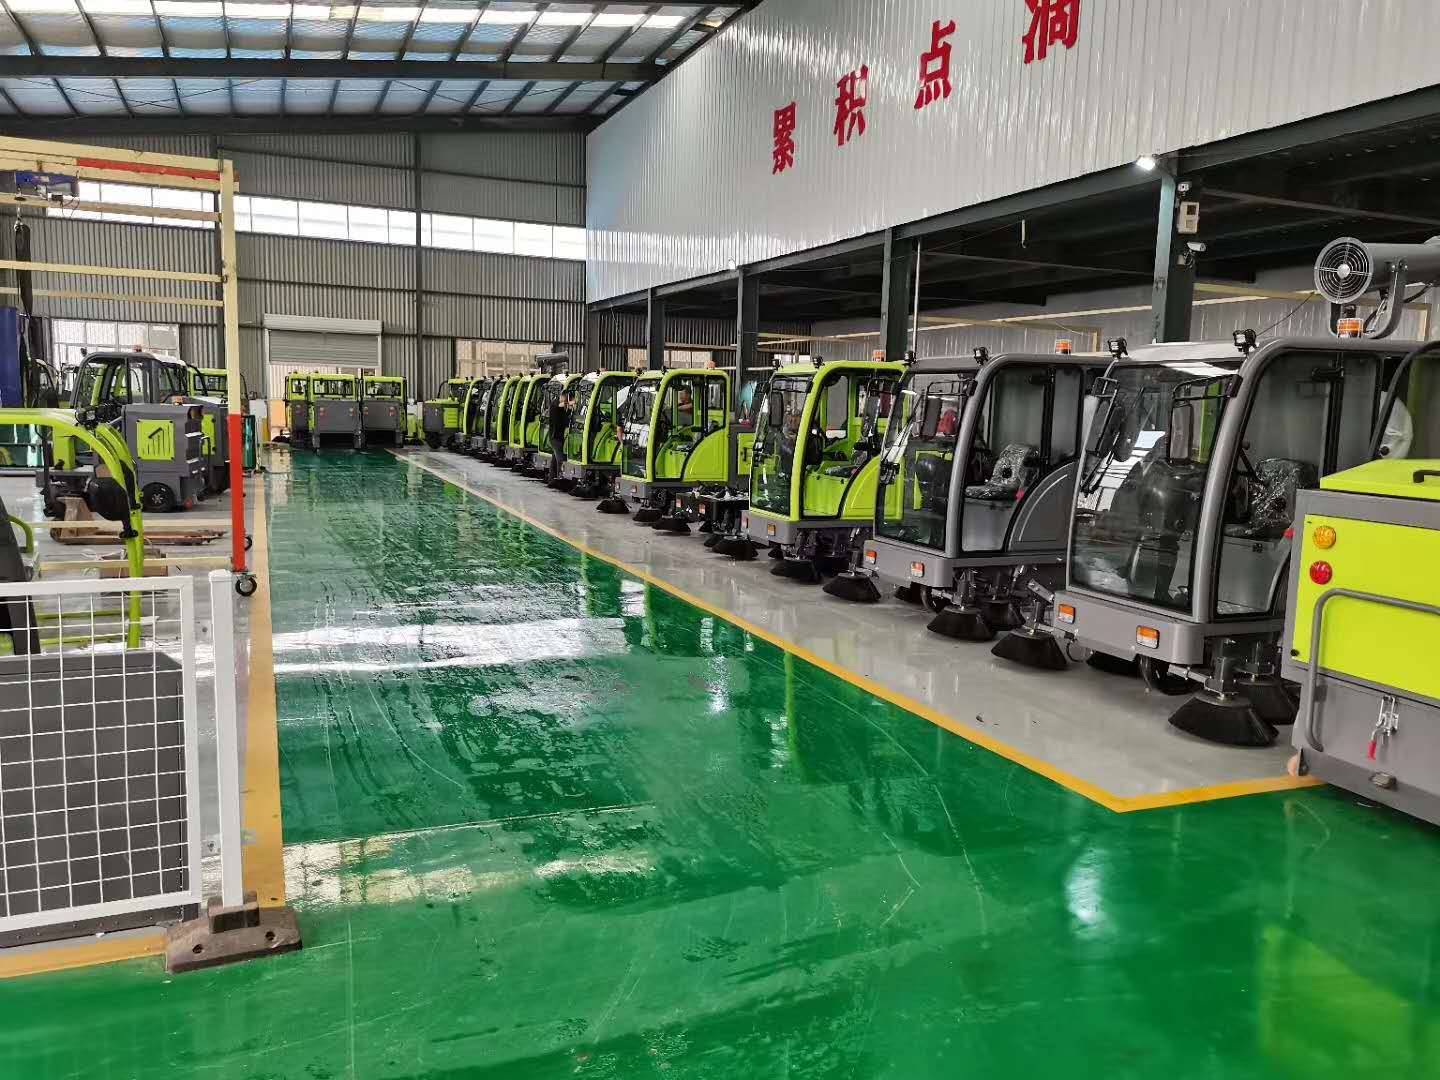 山东省济南市历城区环卫车扫地车生产厂家新款2000型号1.5kw